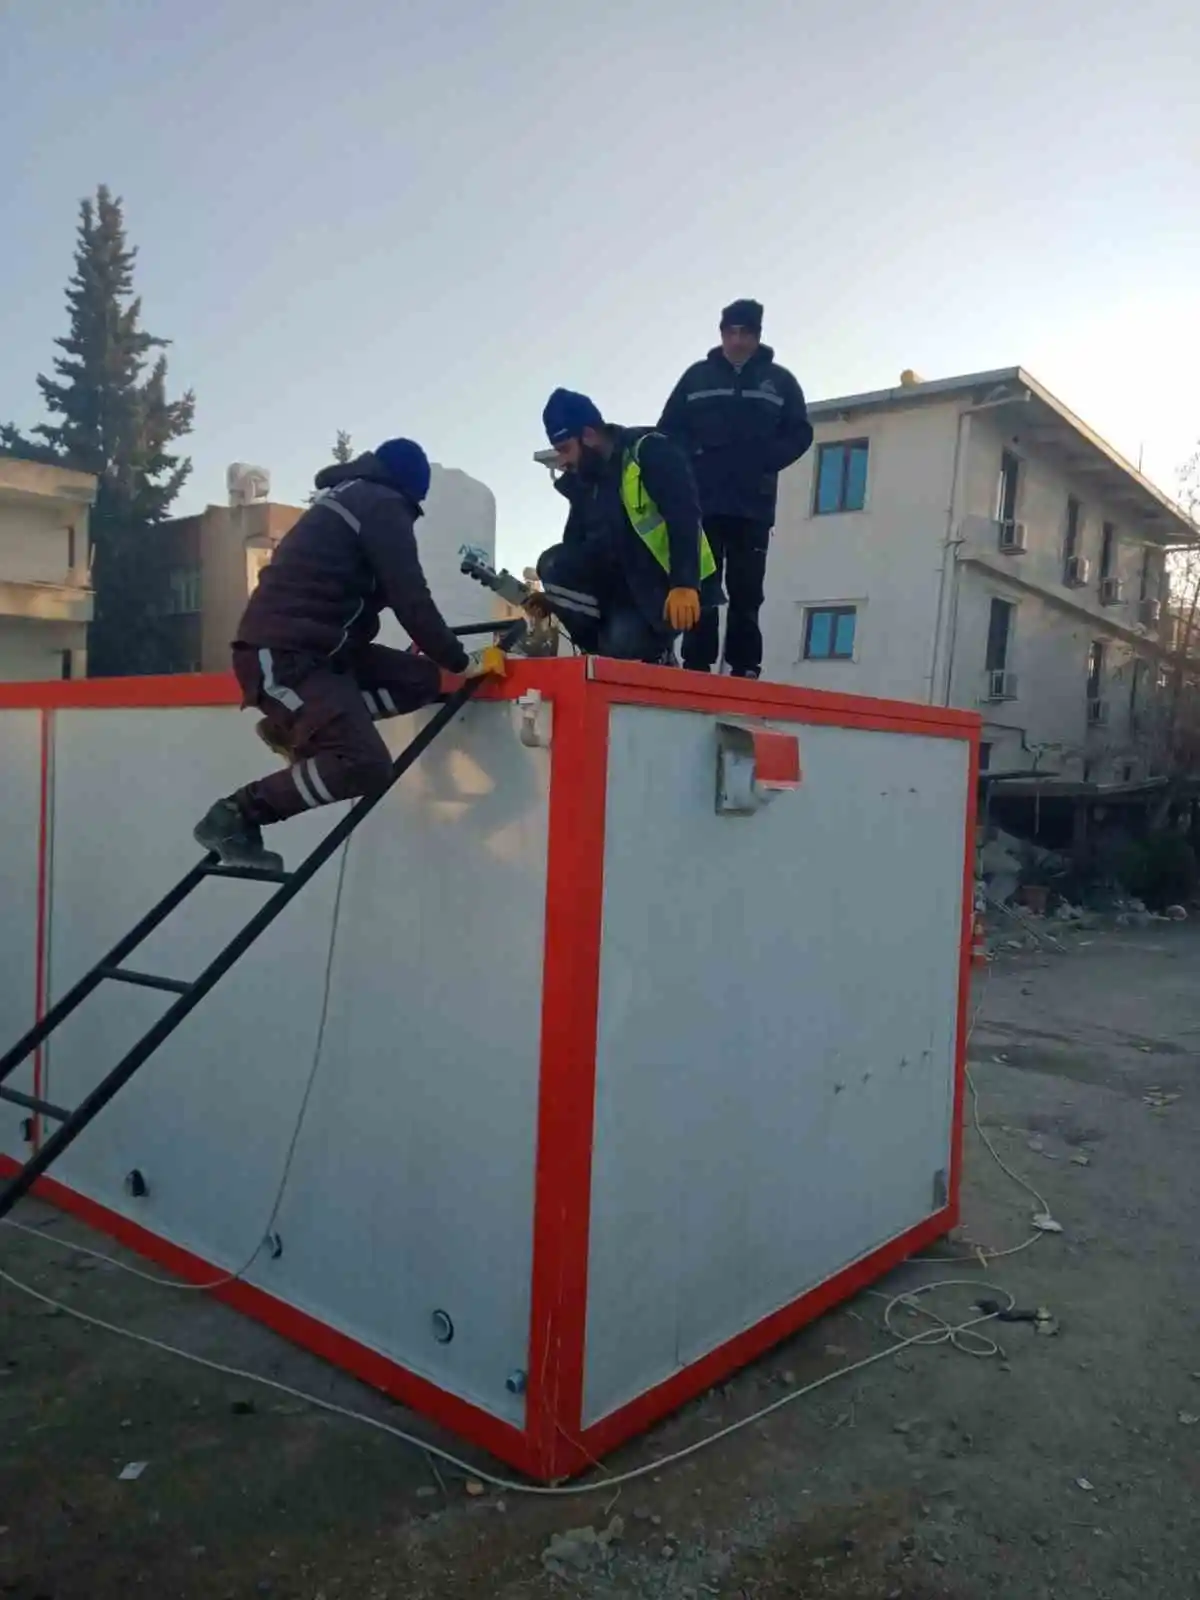 ESKİ, 70 personel ve 21 iş makinası ile deprem bölgesinde
